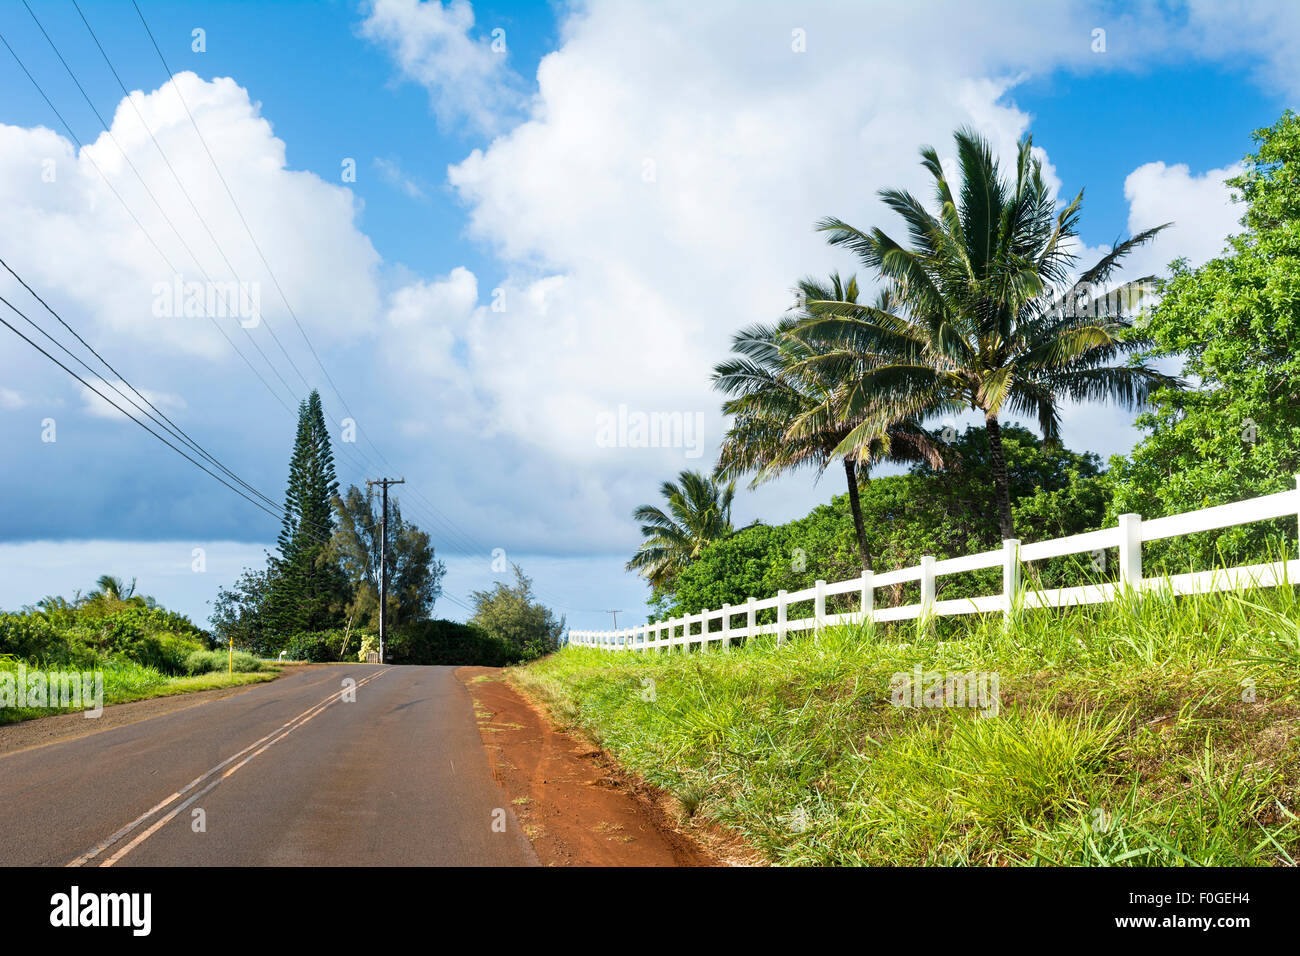 Ein Hinterland Straße in einem abgelegenen Teil von Kauai, Hawaii mit schönen grünen Rasen und einem weißen Zaun entlang der Fahrbahn. Stockfoto